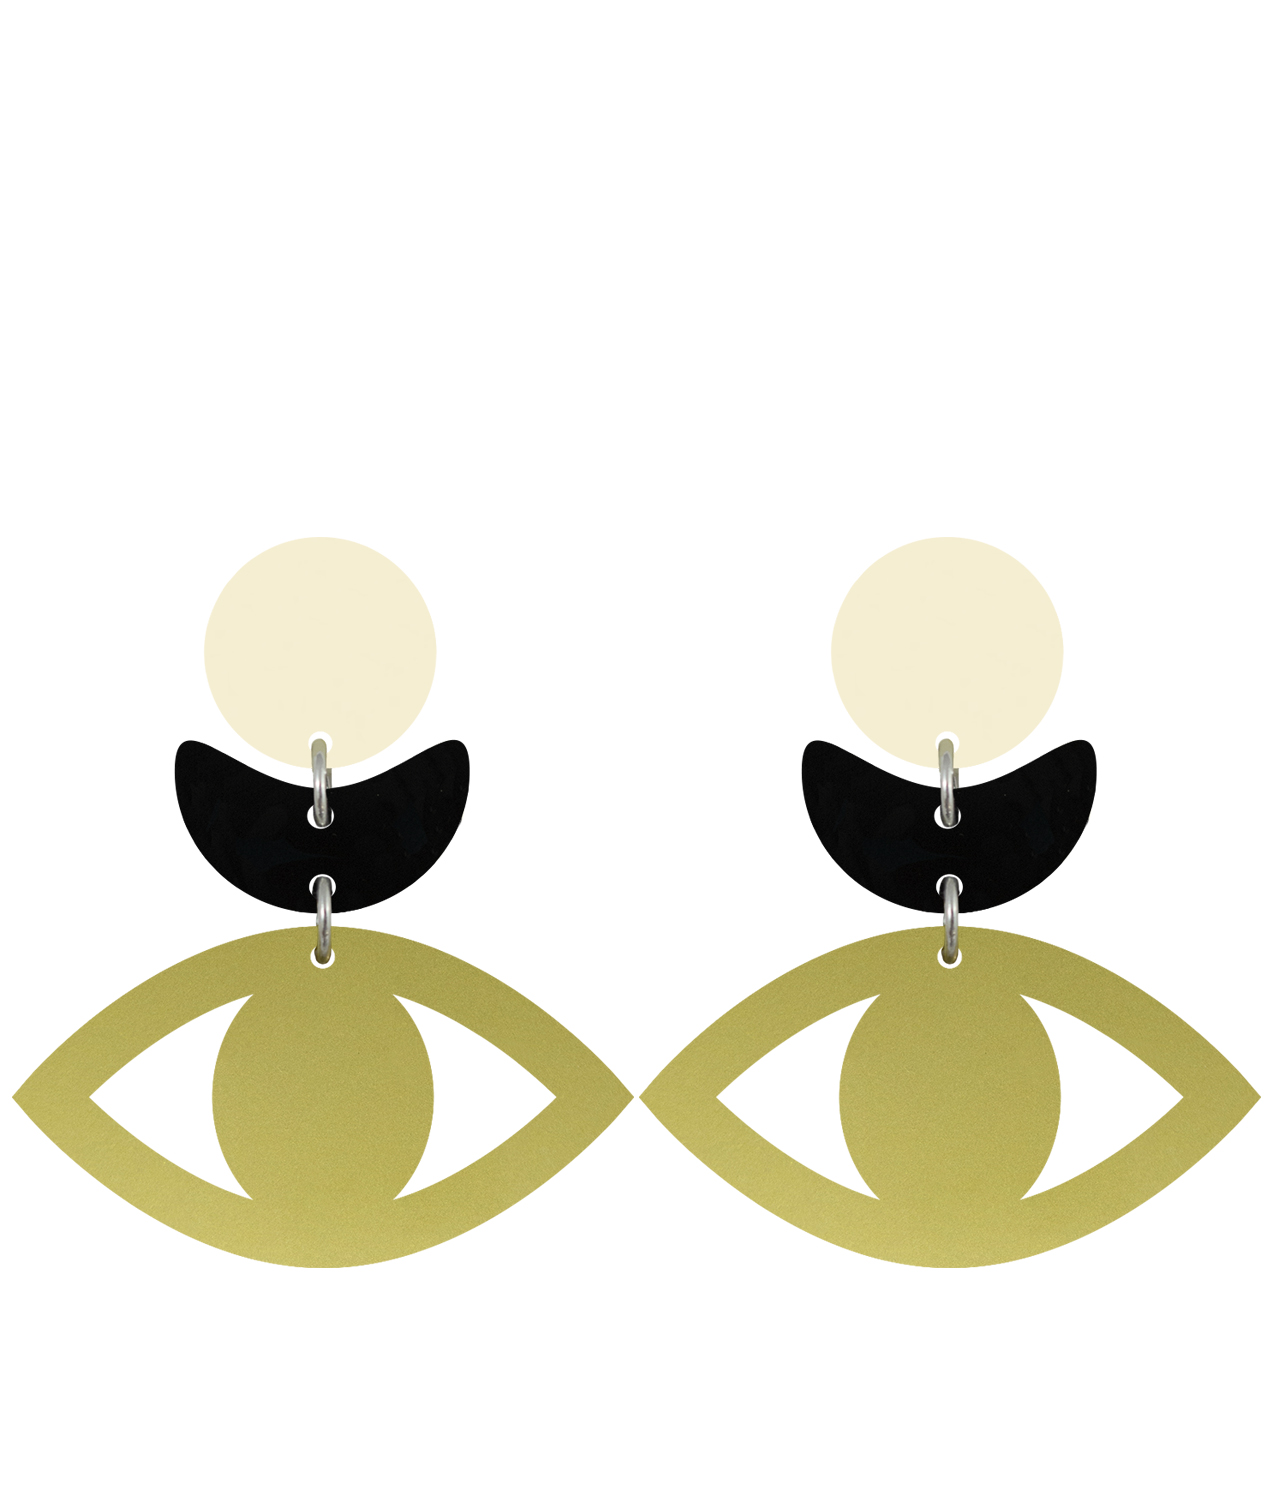 Orella Jewelry Olimpia Earrings Golden